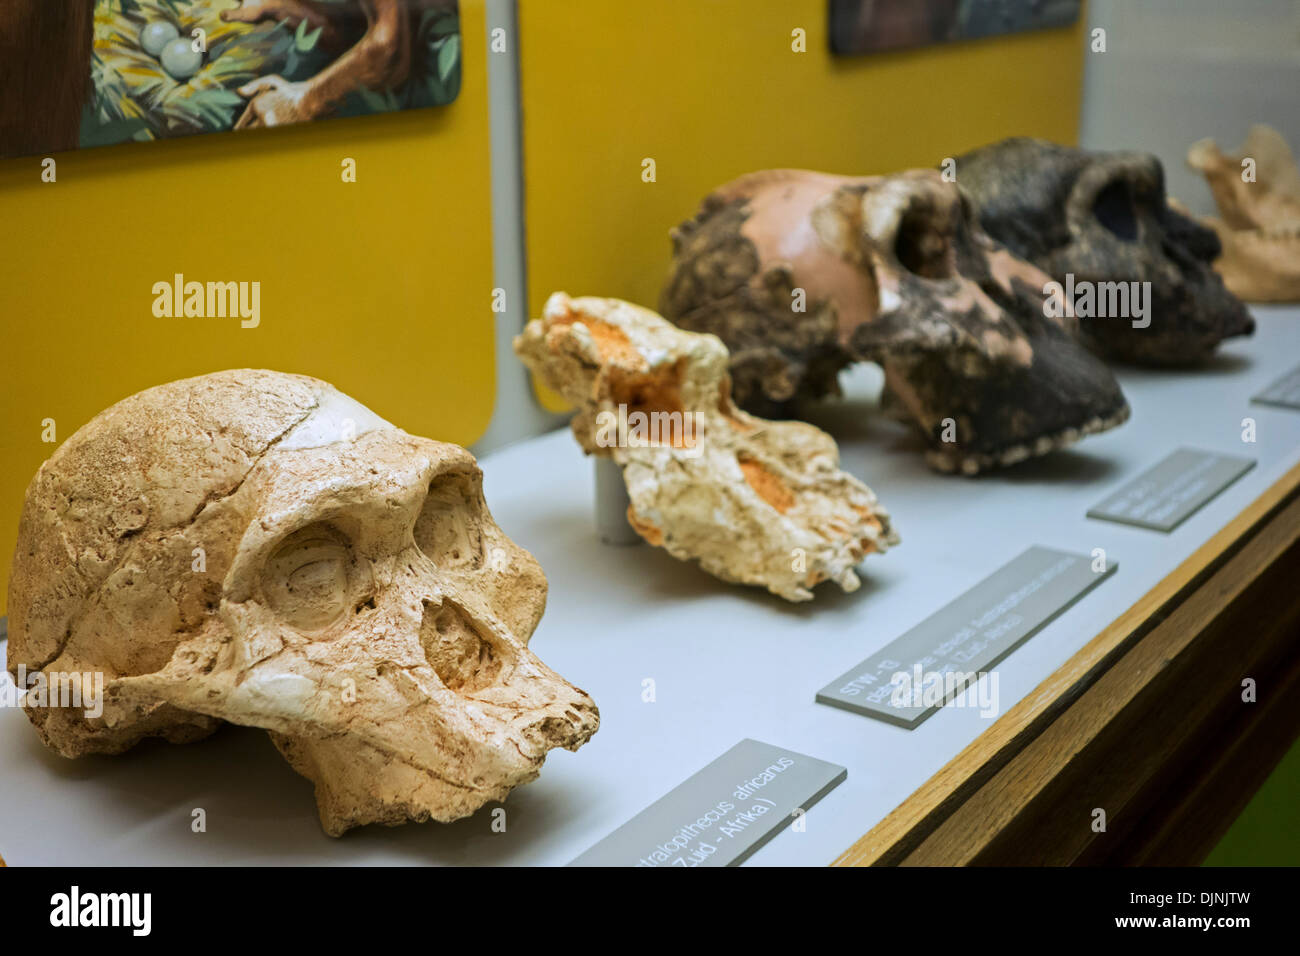 Crâne d'australopithecus africanus et fossiles hominin relatives à l'évolution humaine, le musée d'histoire naturelle Kina, Gand, Belgique Banque D'Images